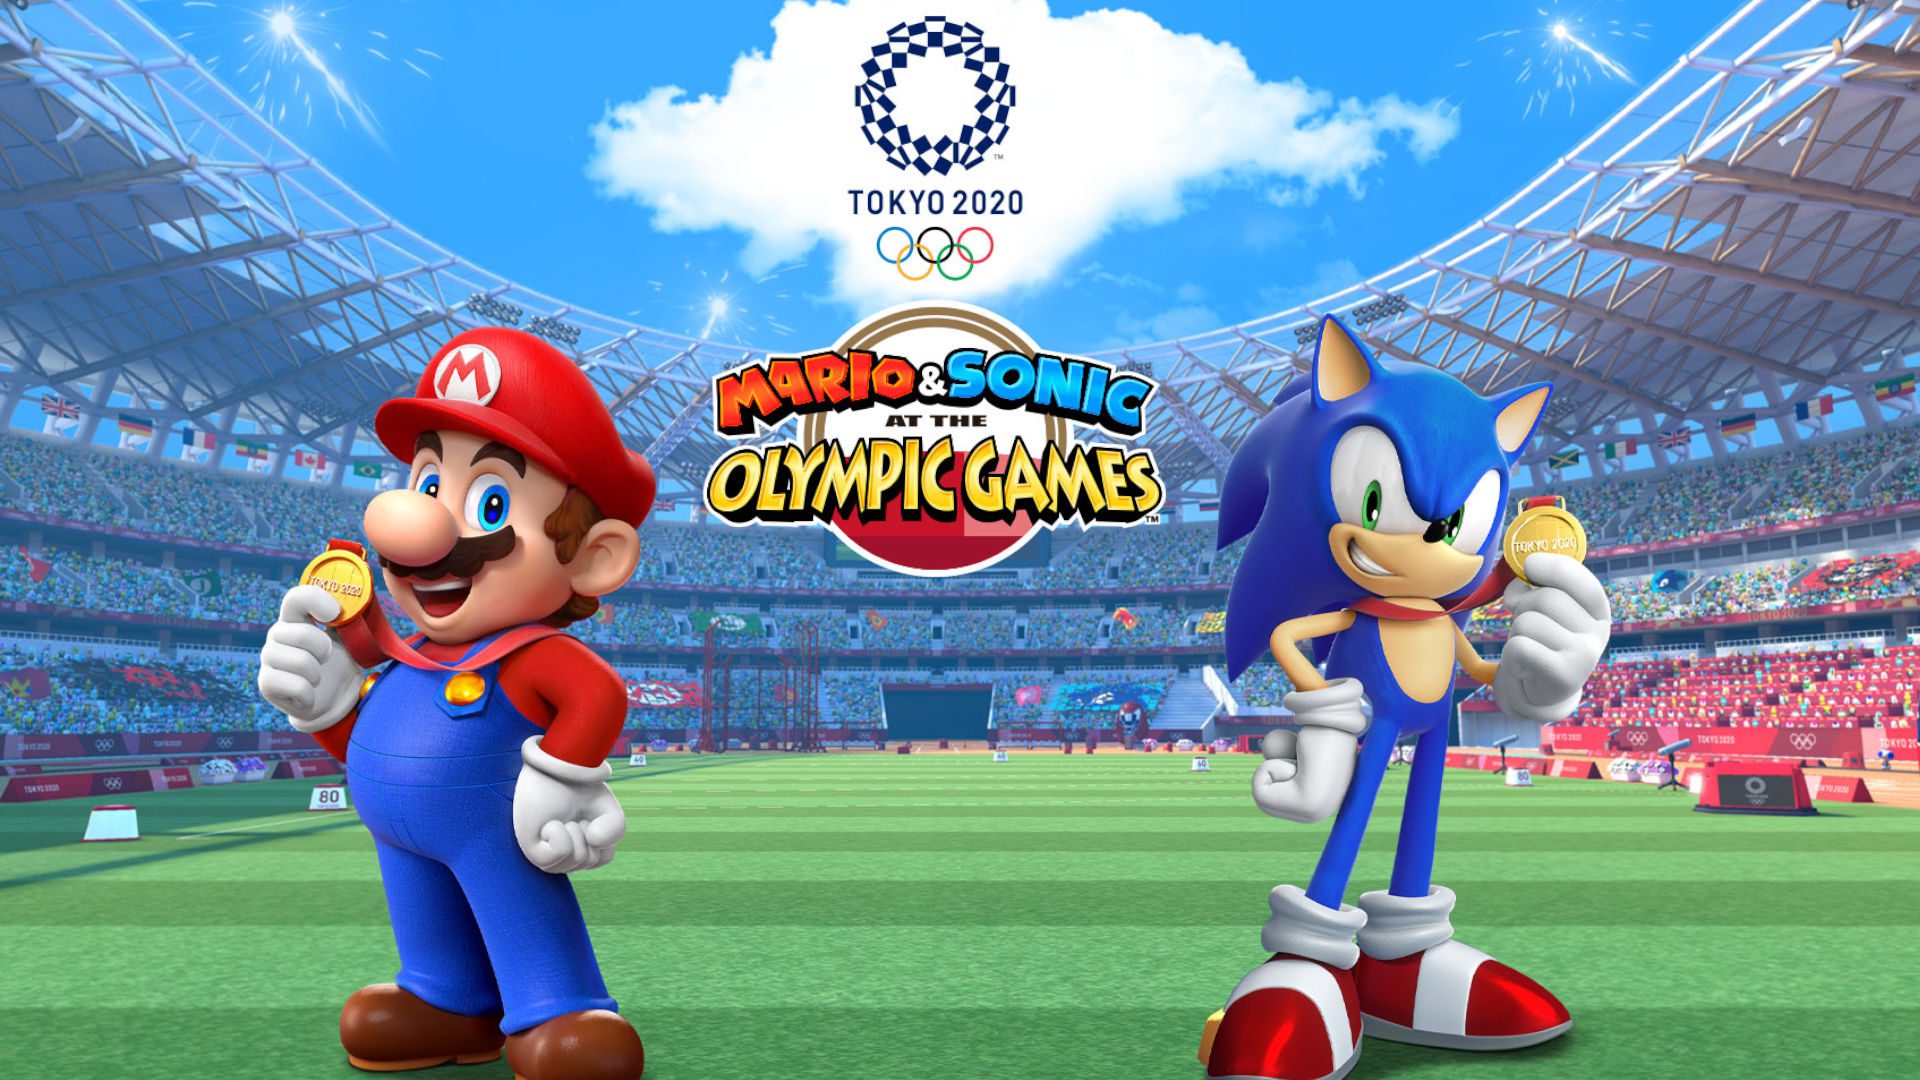 Mario e Sonic na capa dos Jogos Olímpicos de Tóquio 2020, com mario e sonic em pé em um estádio